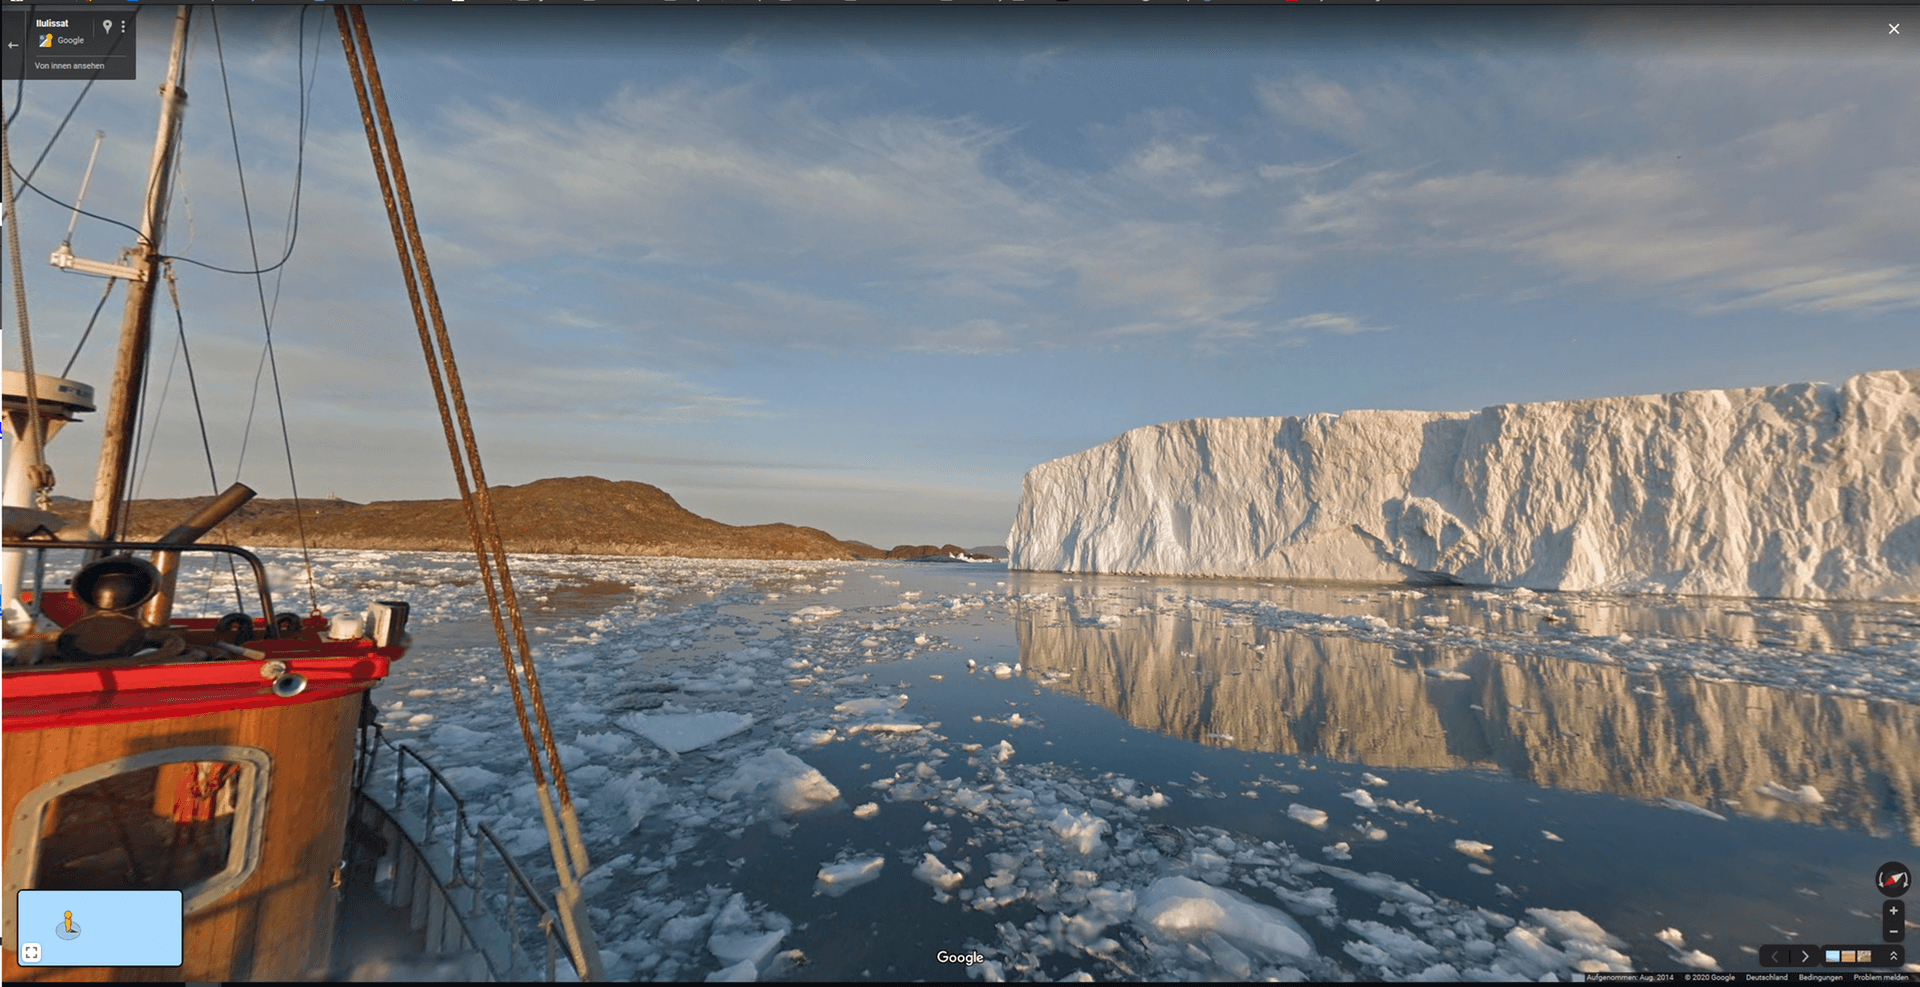 Eisberge werden seltener. Auf Google Maps lassen sich die weißen Riesen noch erkunden, vor der Küste Grönlands.